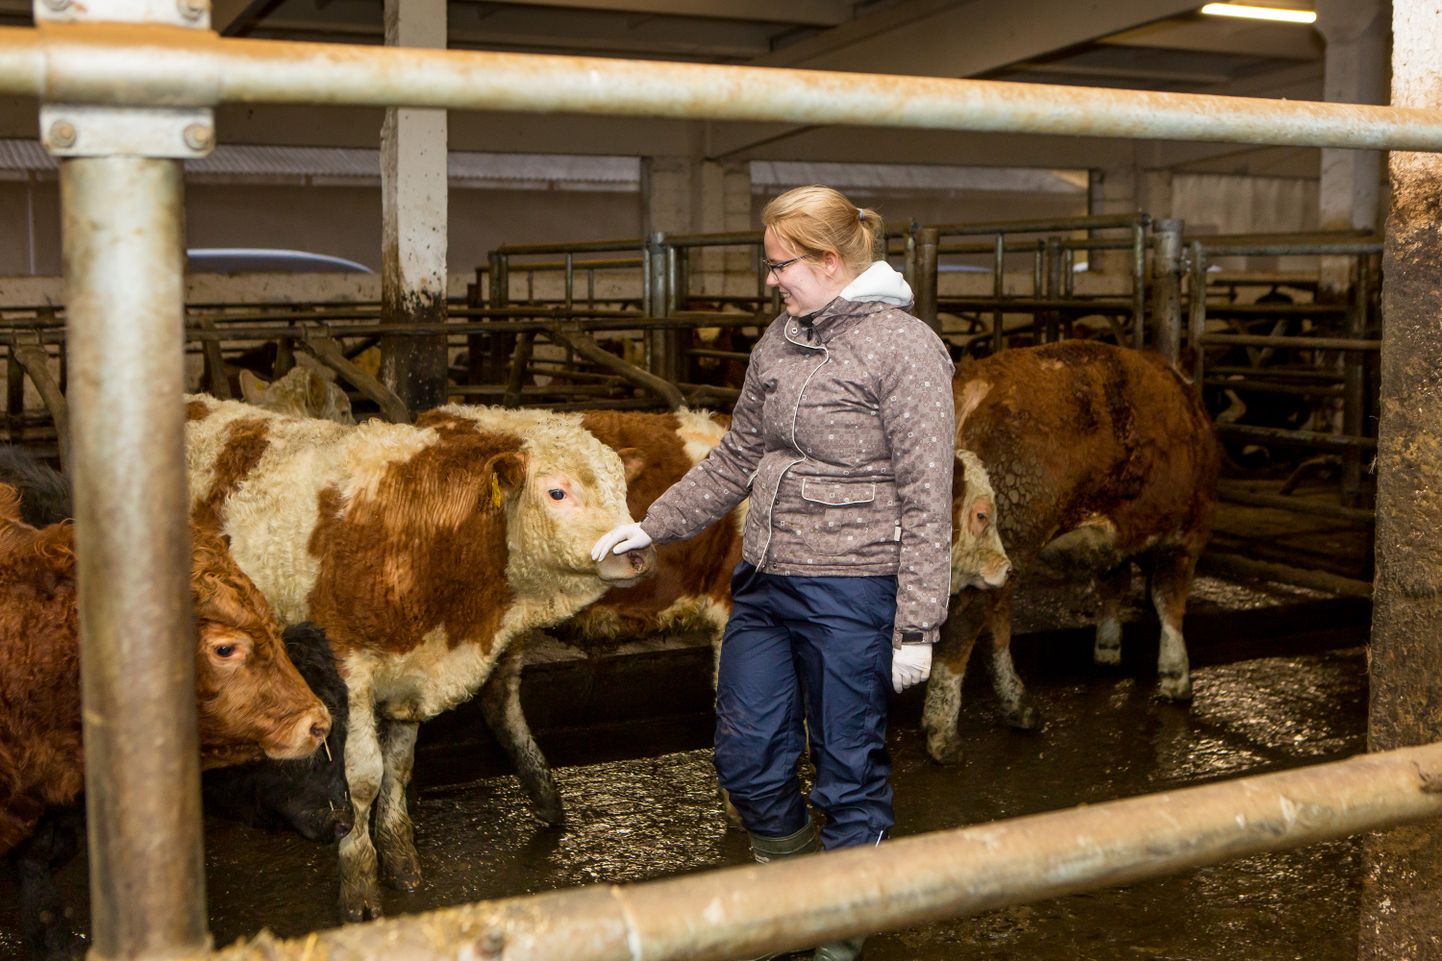 TERVISEKONTROLL: Veterinaar Kerti Ruttu tõdeb Ollemäe farmis, et selle vissi tervis on korras. Lihaveiste eest hoolt kandma oodatakse veel loomakasvatusjuhti ja traktoristi.